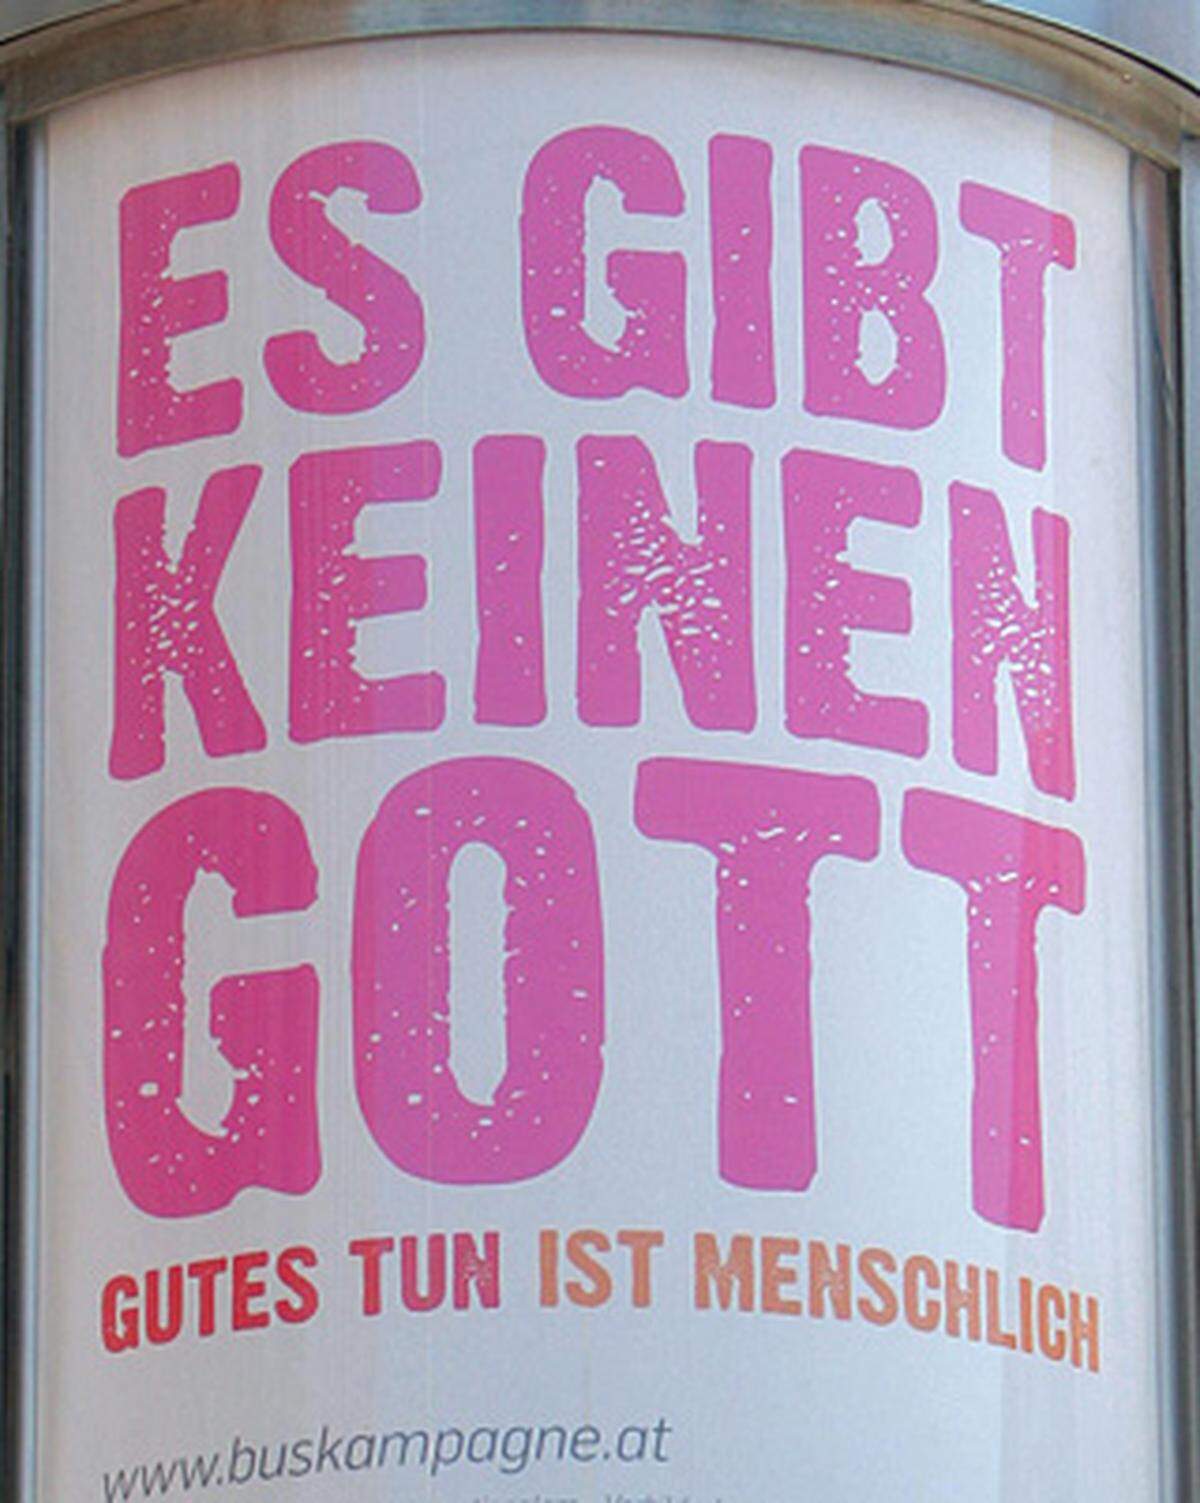 Die Atheistenkampagne "Es gibt keinen Gott" startet nach einer ersten Absage nun doch auch in Wien.  Die Anti-Religions-Werbung war zuvor schon in anderen Städten zu sehen, wo sie teils von heftigen Diskussionen begleitet wurde.